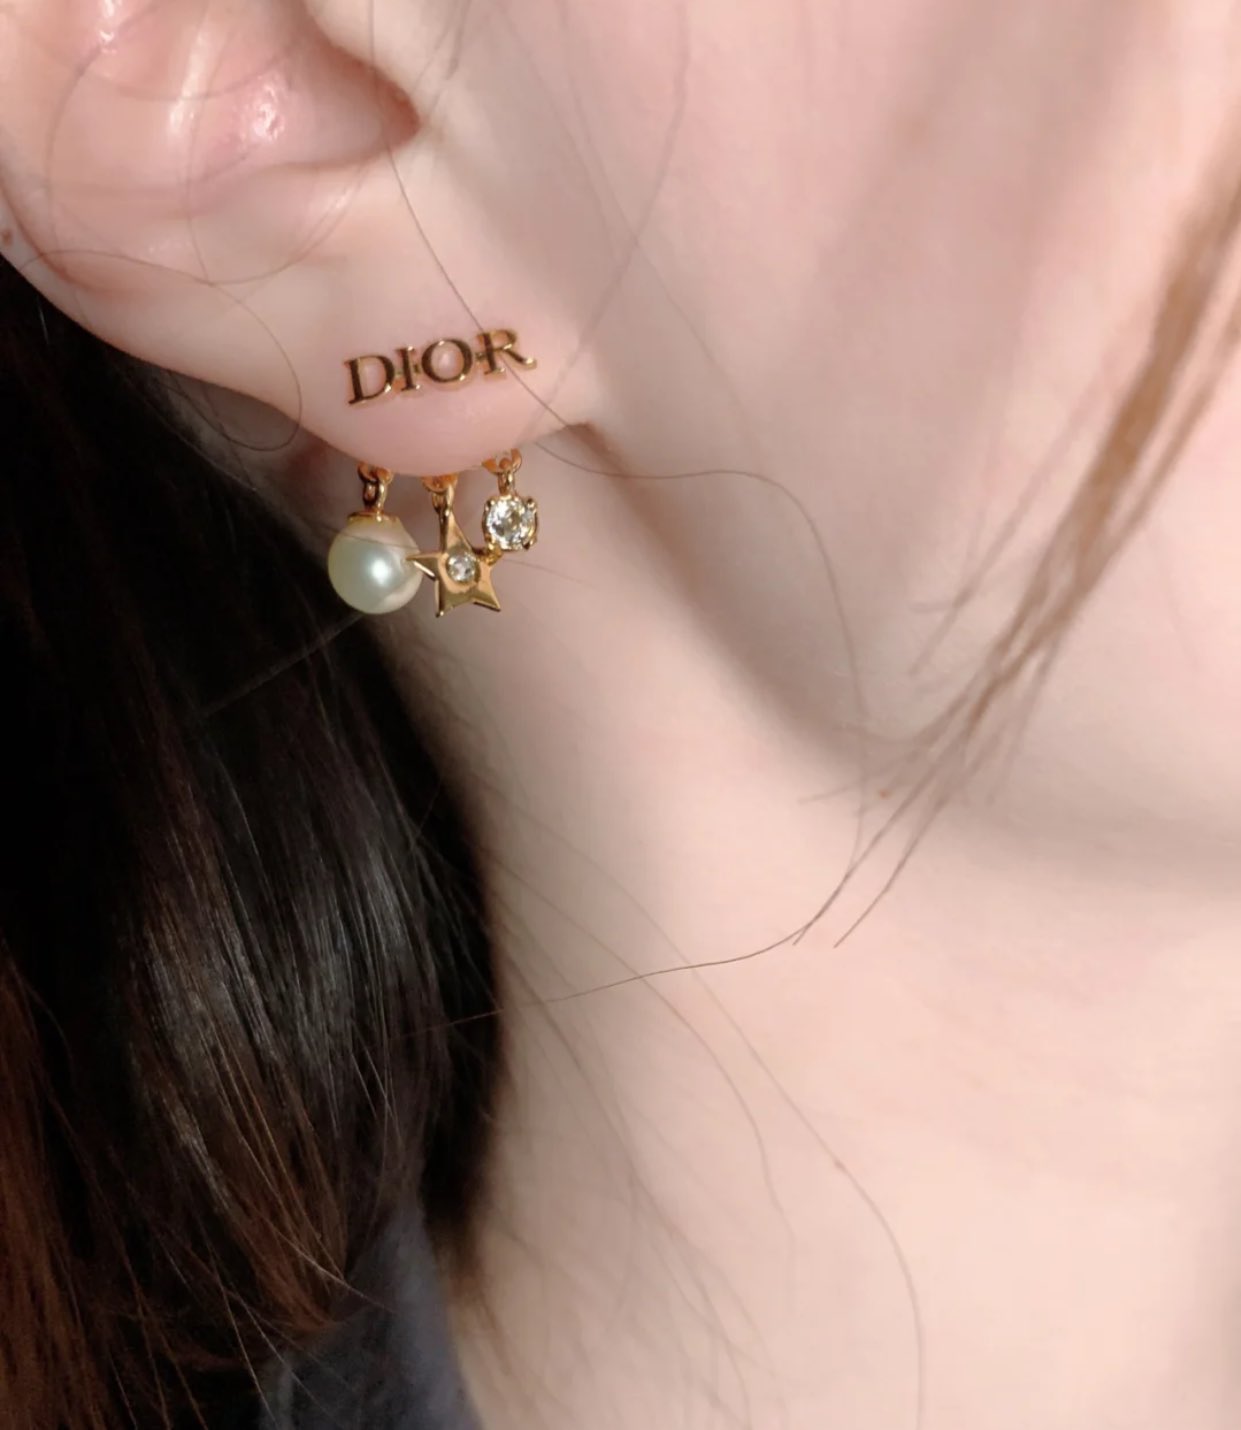 【Dior】最高にかわいいピアス・華奢な作りが可愛すぎる!!